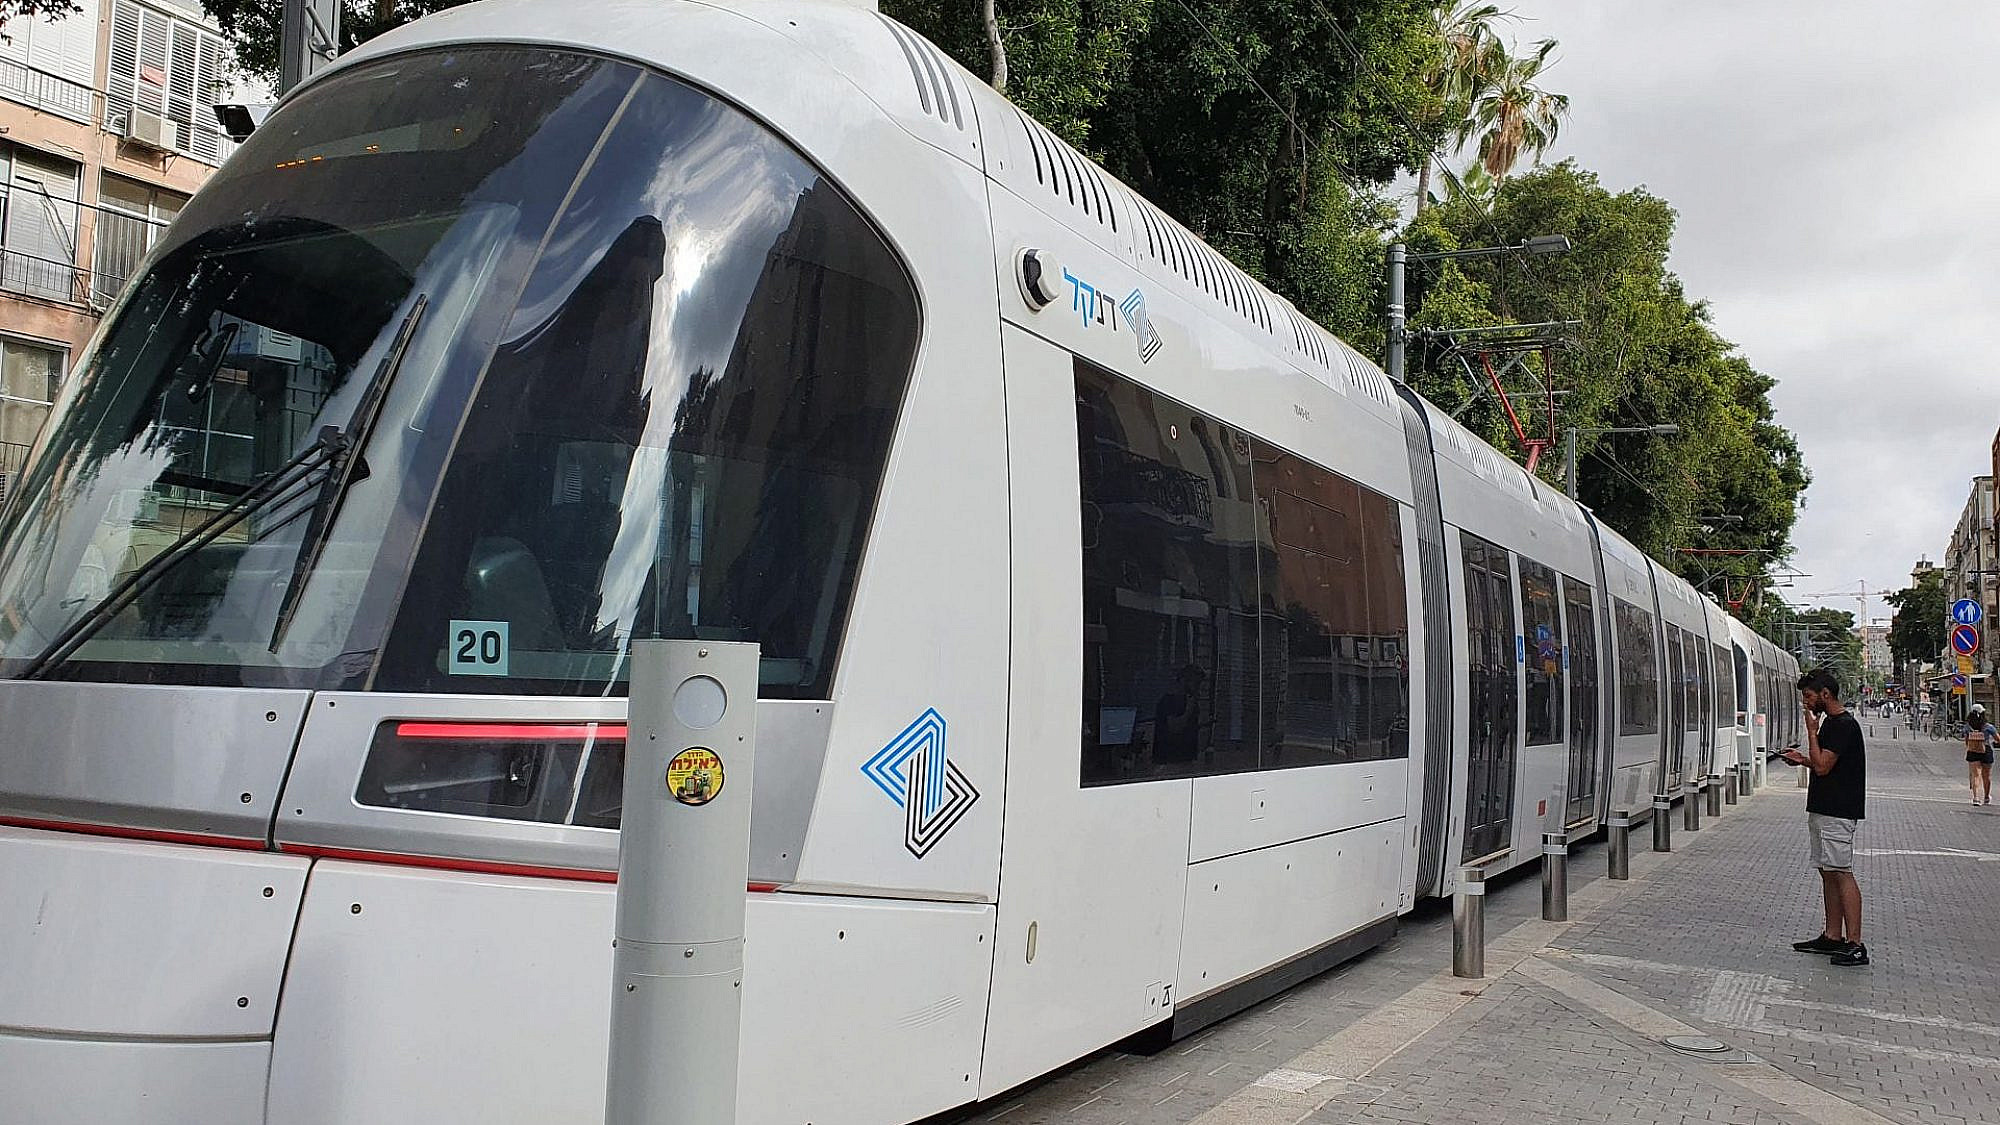 הרכבת הקלה בשדרות ירושלים. האם הפעם זה יקרה? (צילום: ורד ברקת/שאטרסטוק)